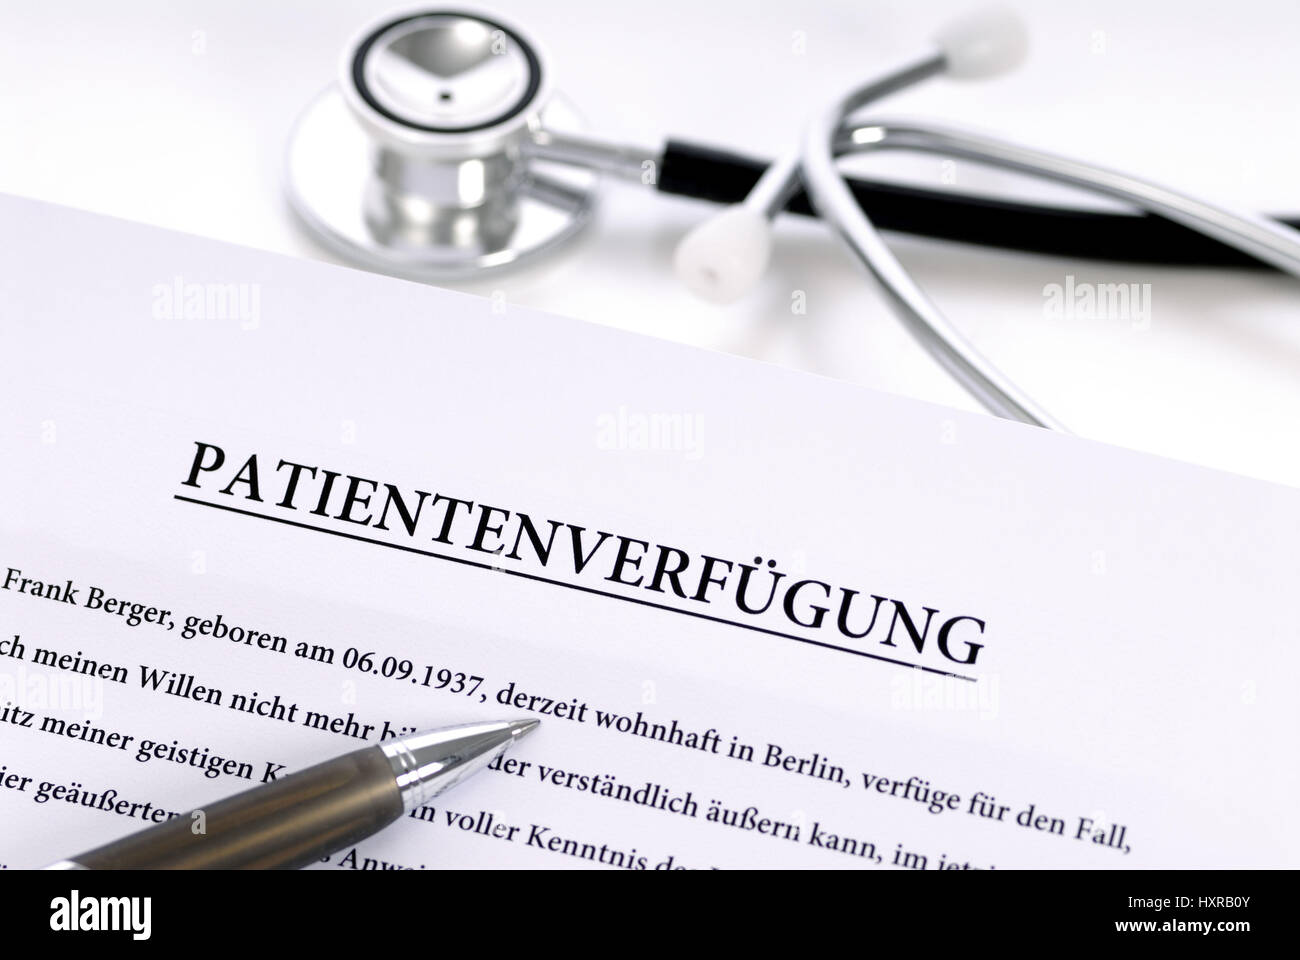 Patient's possession, Patientenverfügung Stock Photo